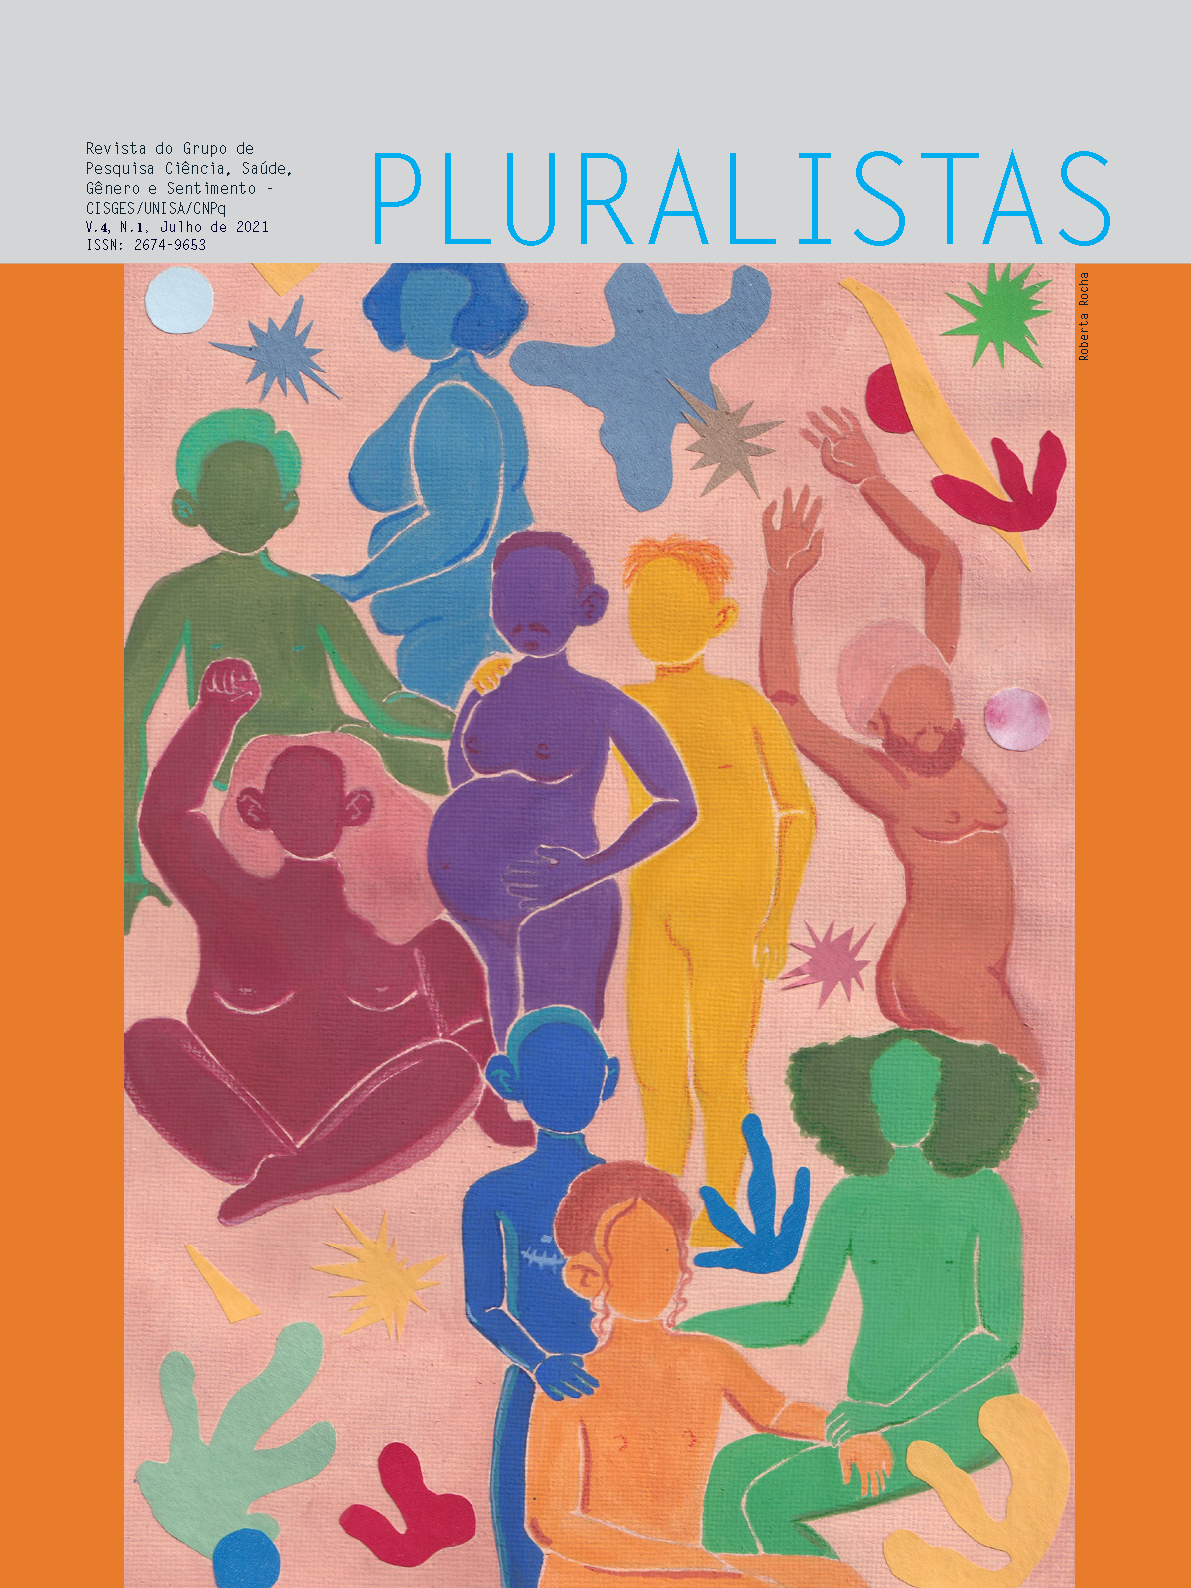 					Visualizar v. 4 n. 1 (2021): Revista Pluralistas - Revista do Grupo de Pesquisa Ciência, Saúde, Gênero e Sentimento - CISGES/UNISA/CNpq
				